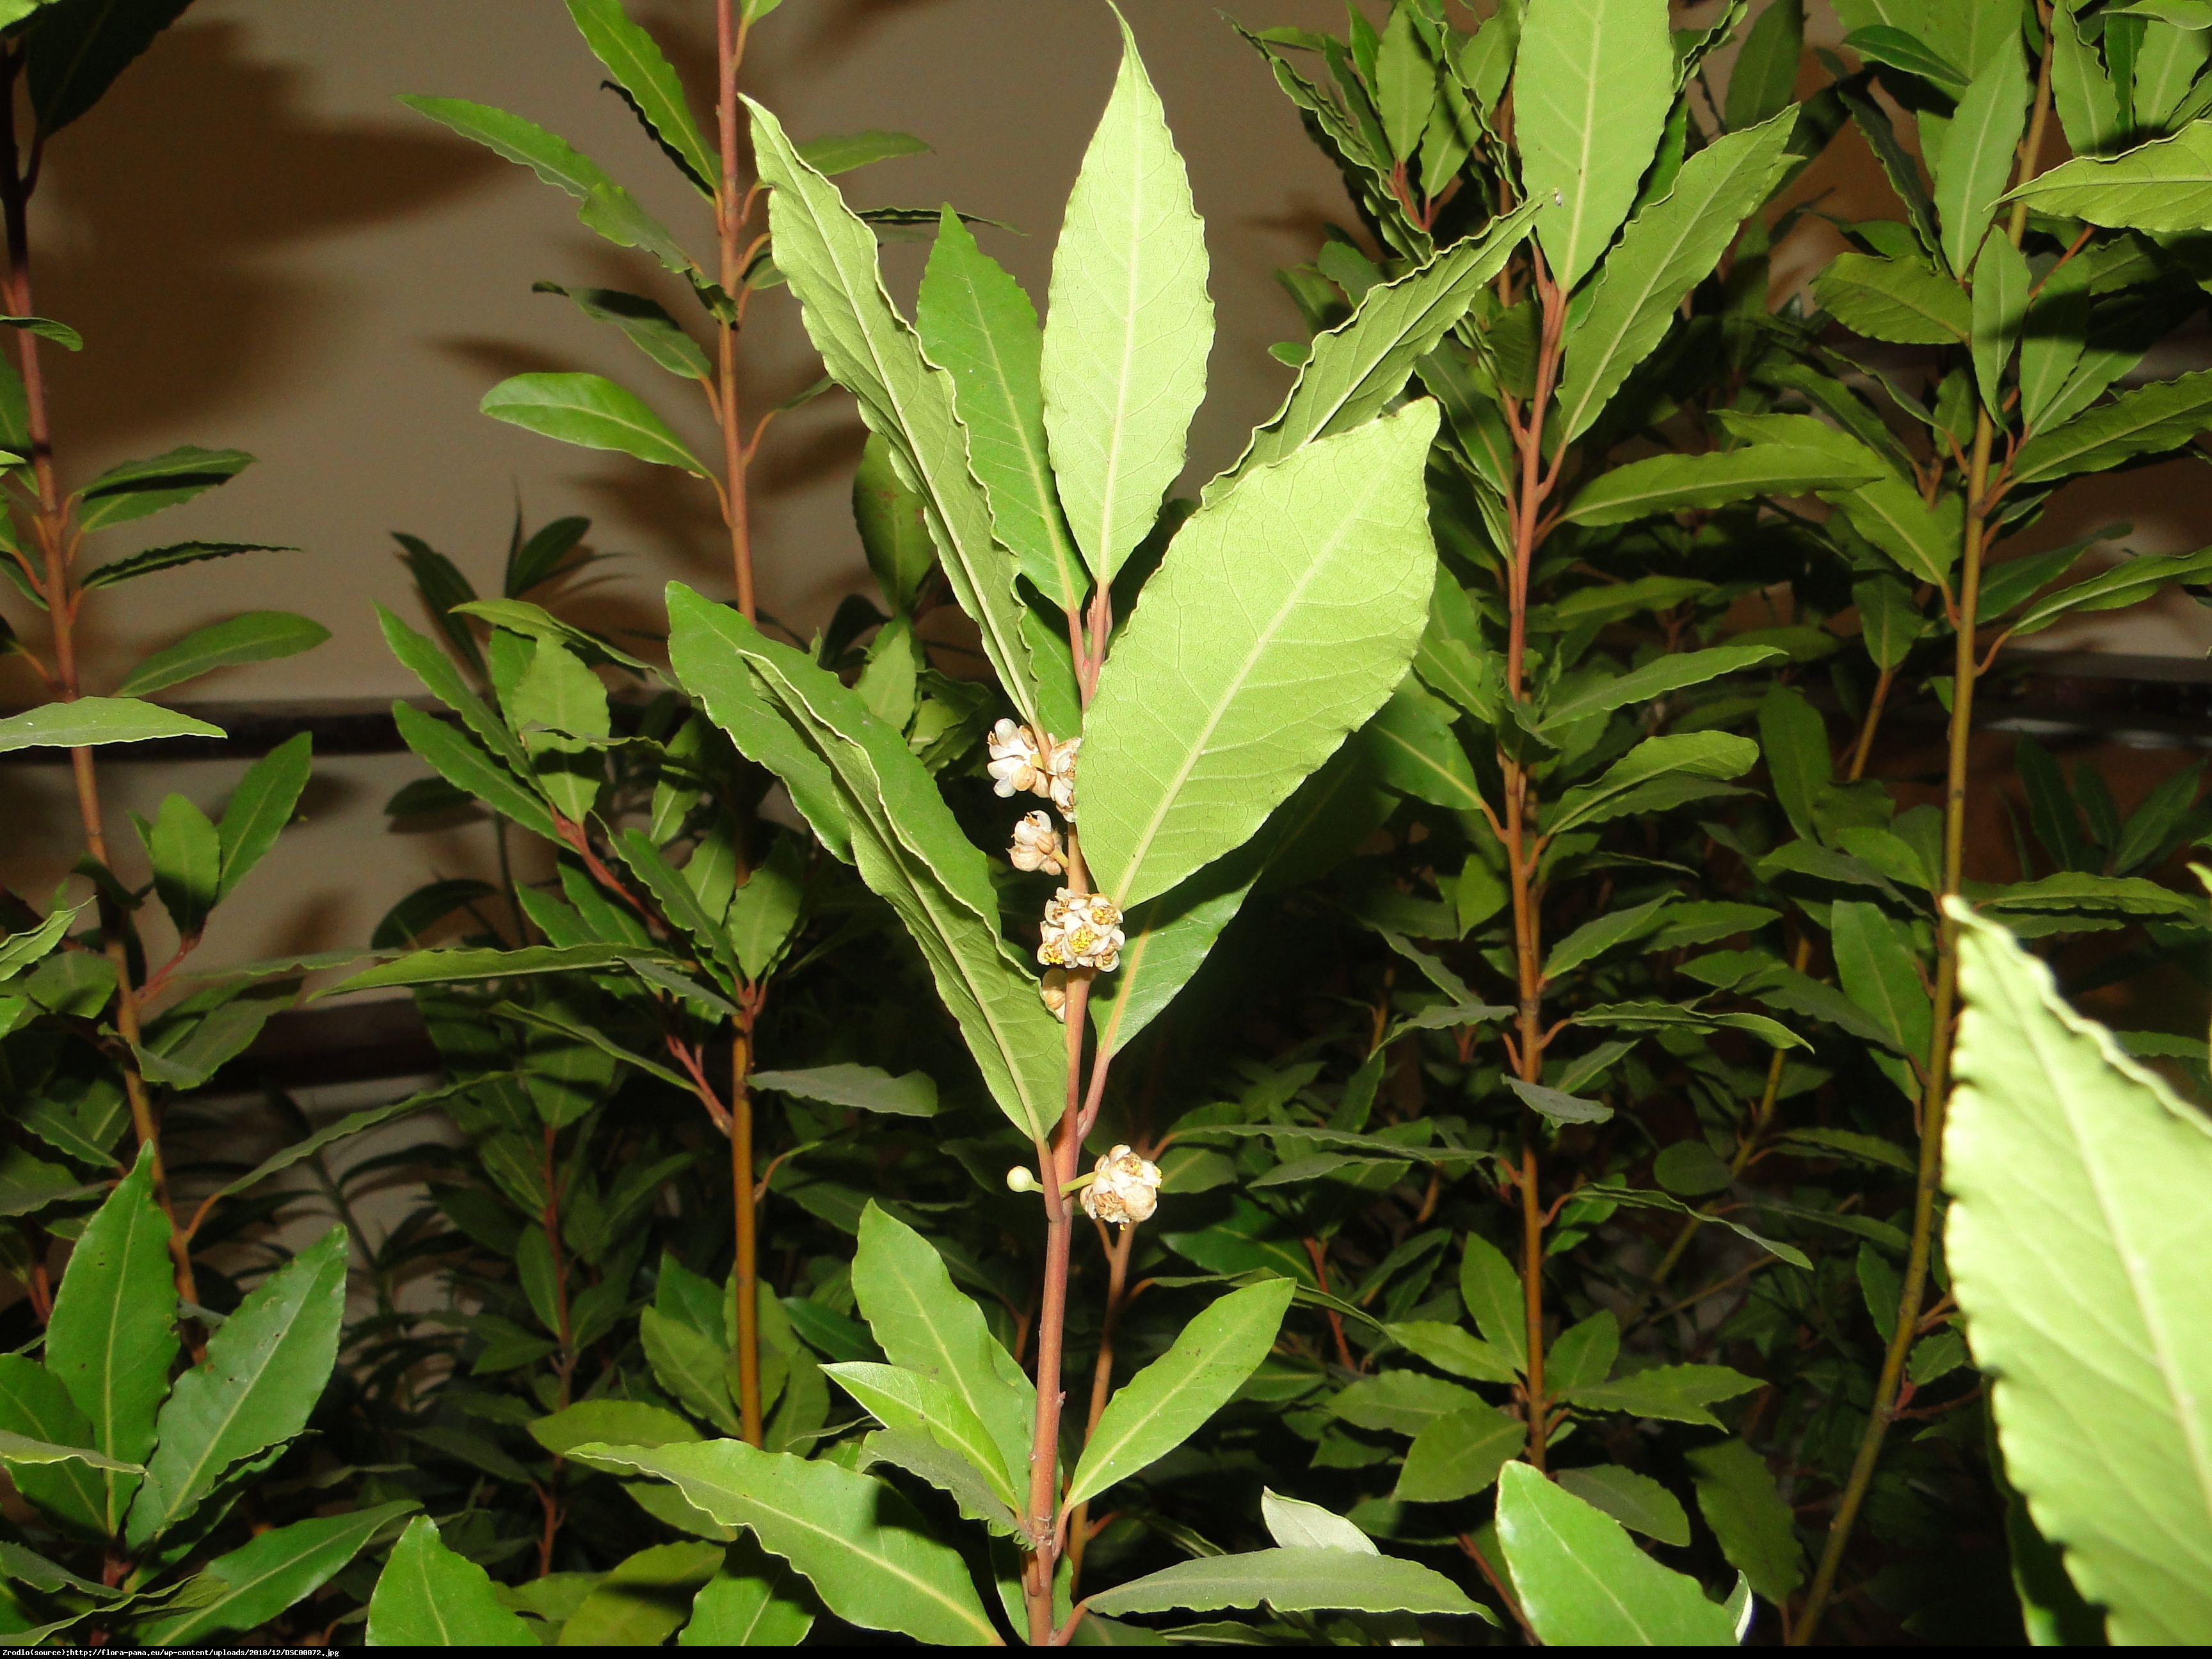 Wawrzyn szlachetny (Drzewo laurowe) - Laurus nobilis